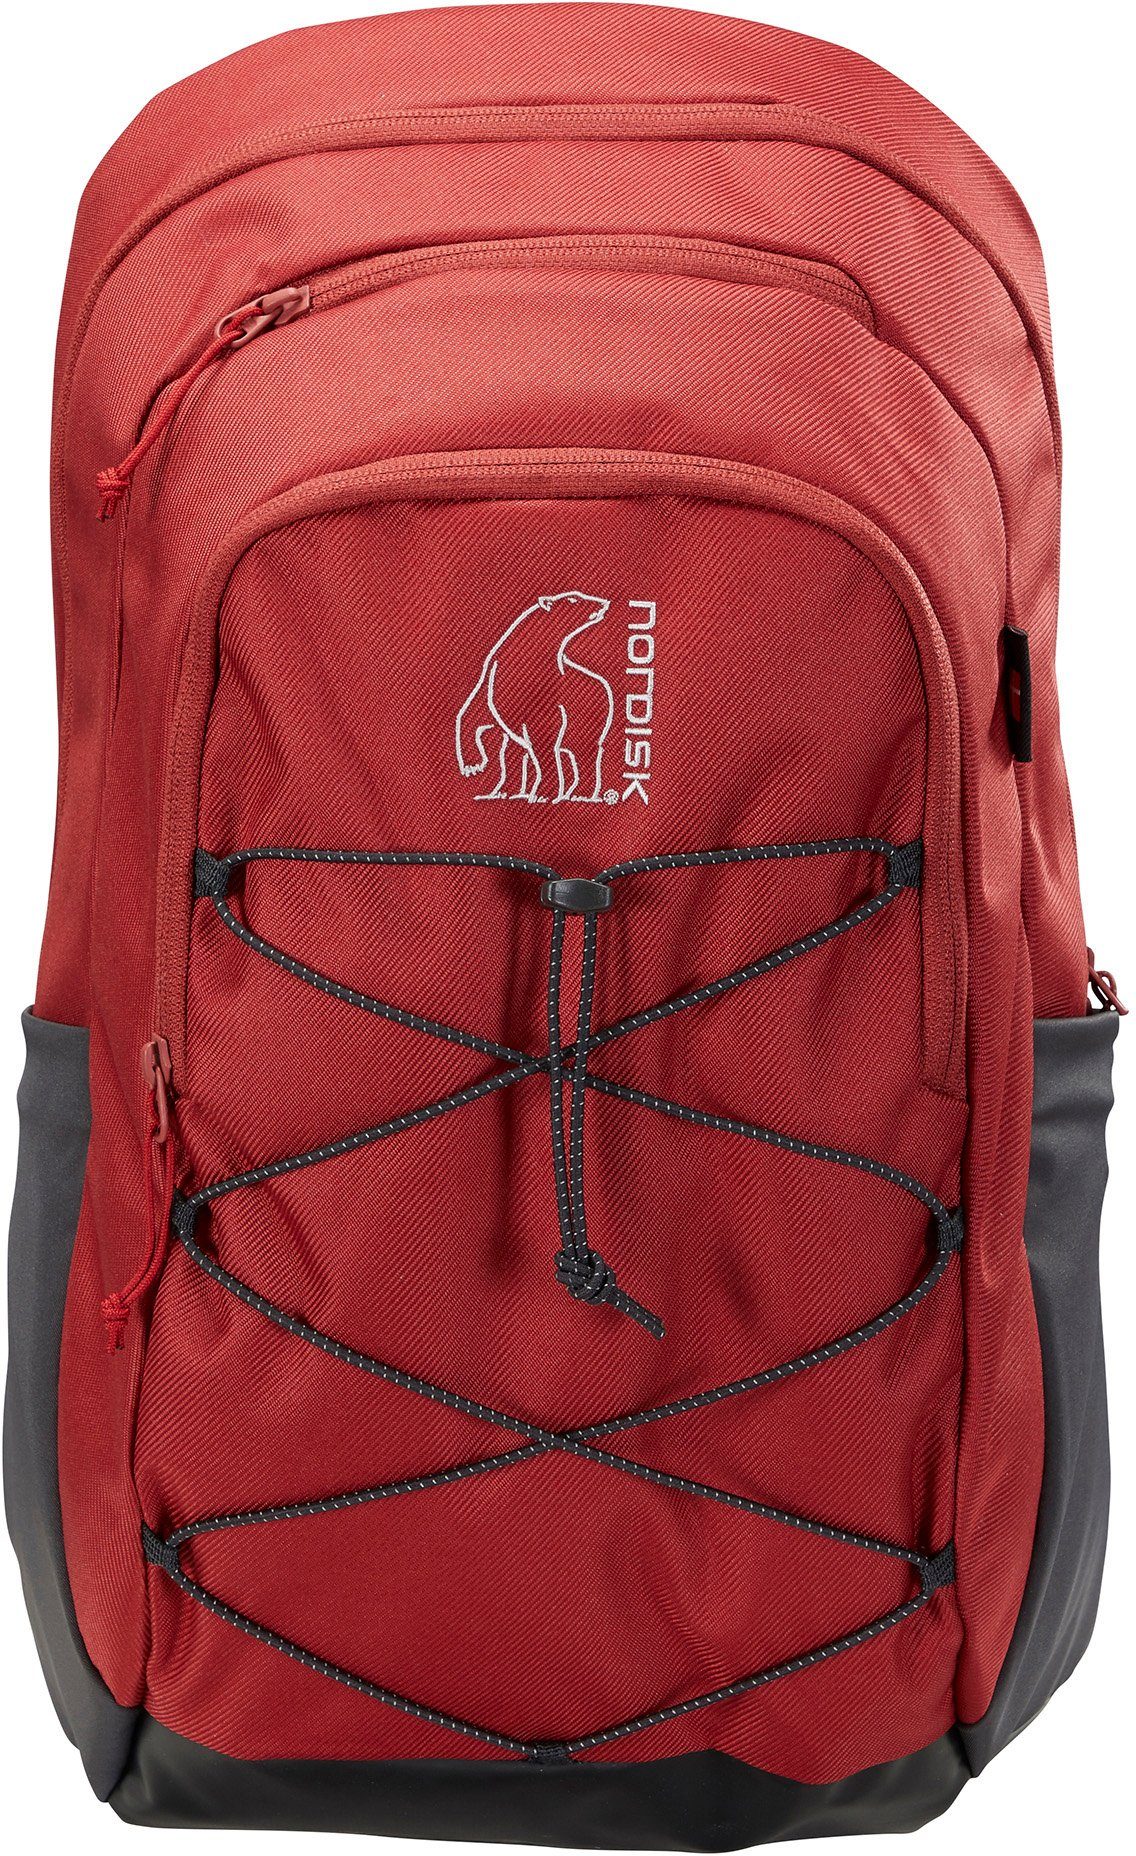 Tinn Nordisk Tourenrucksack Backpack Red 24 Burnt